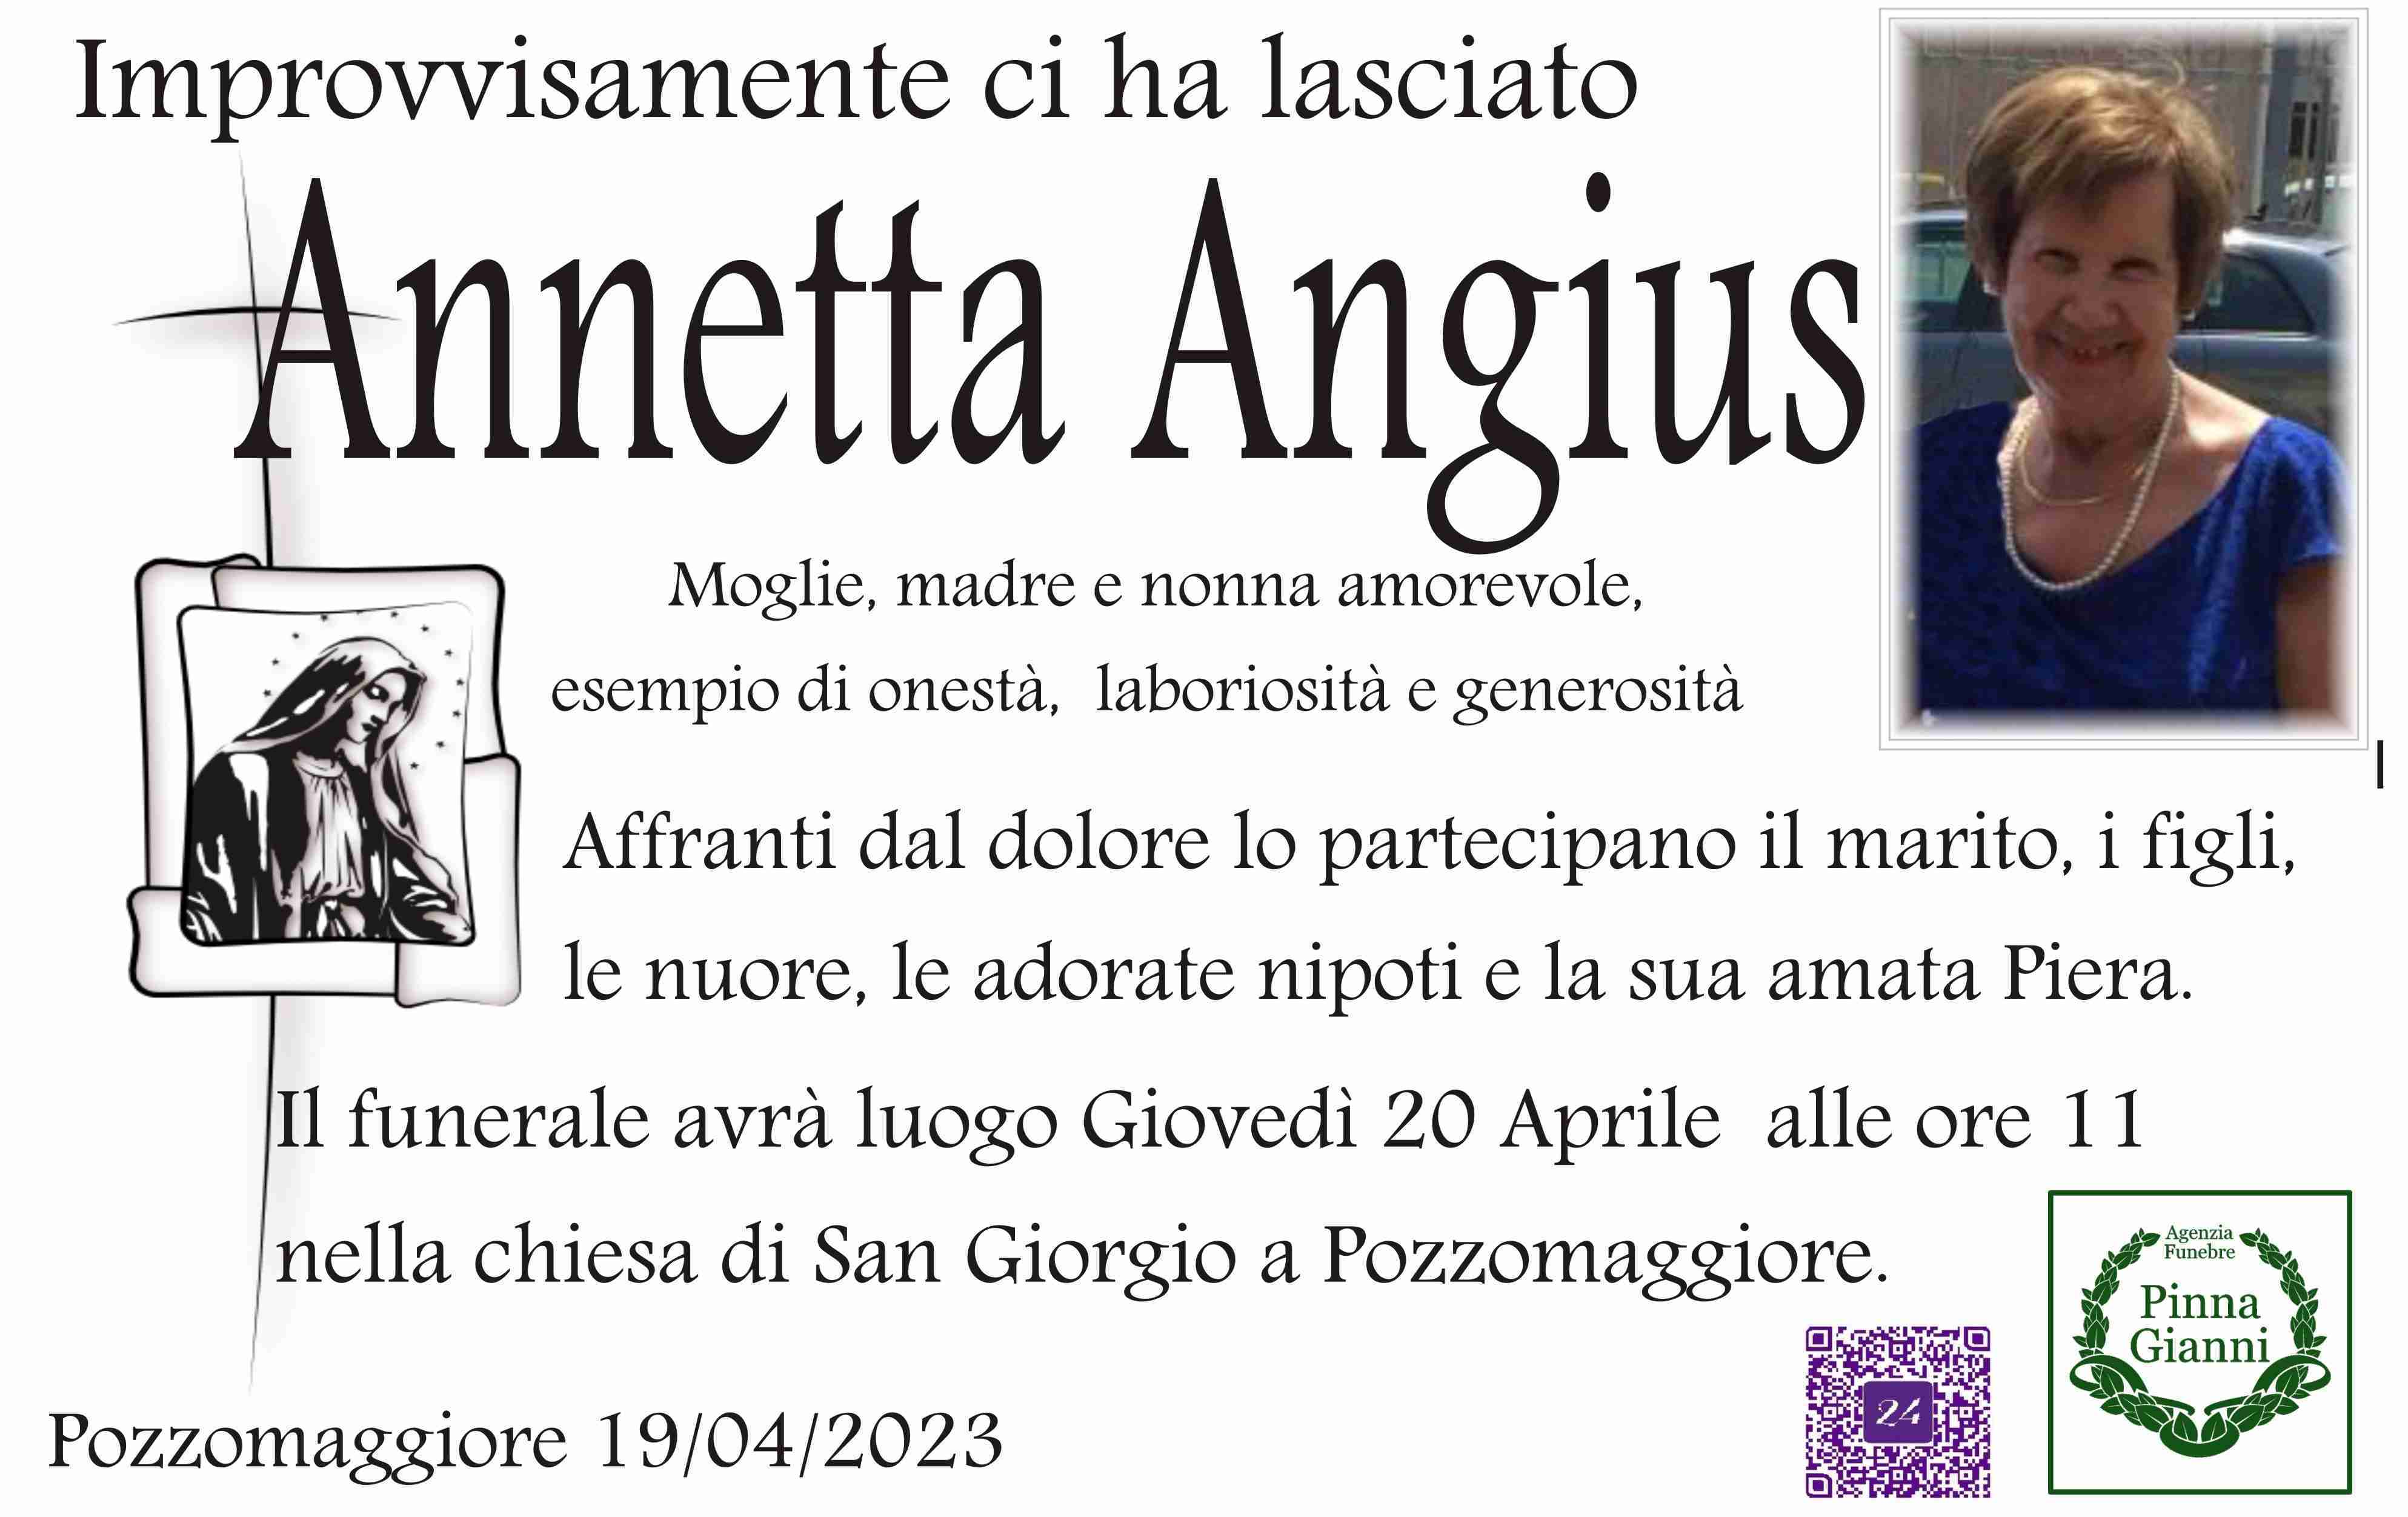 Annetta Angius